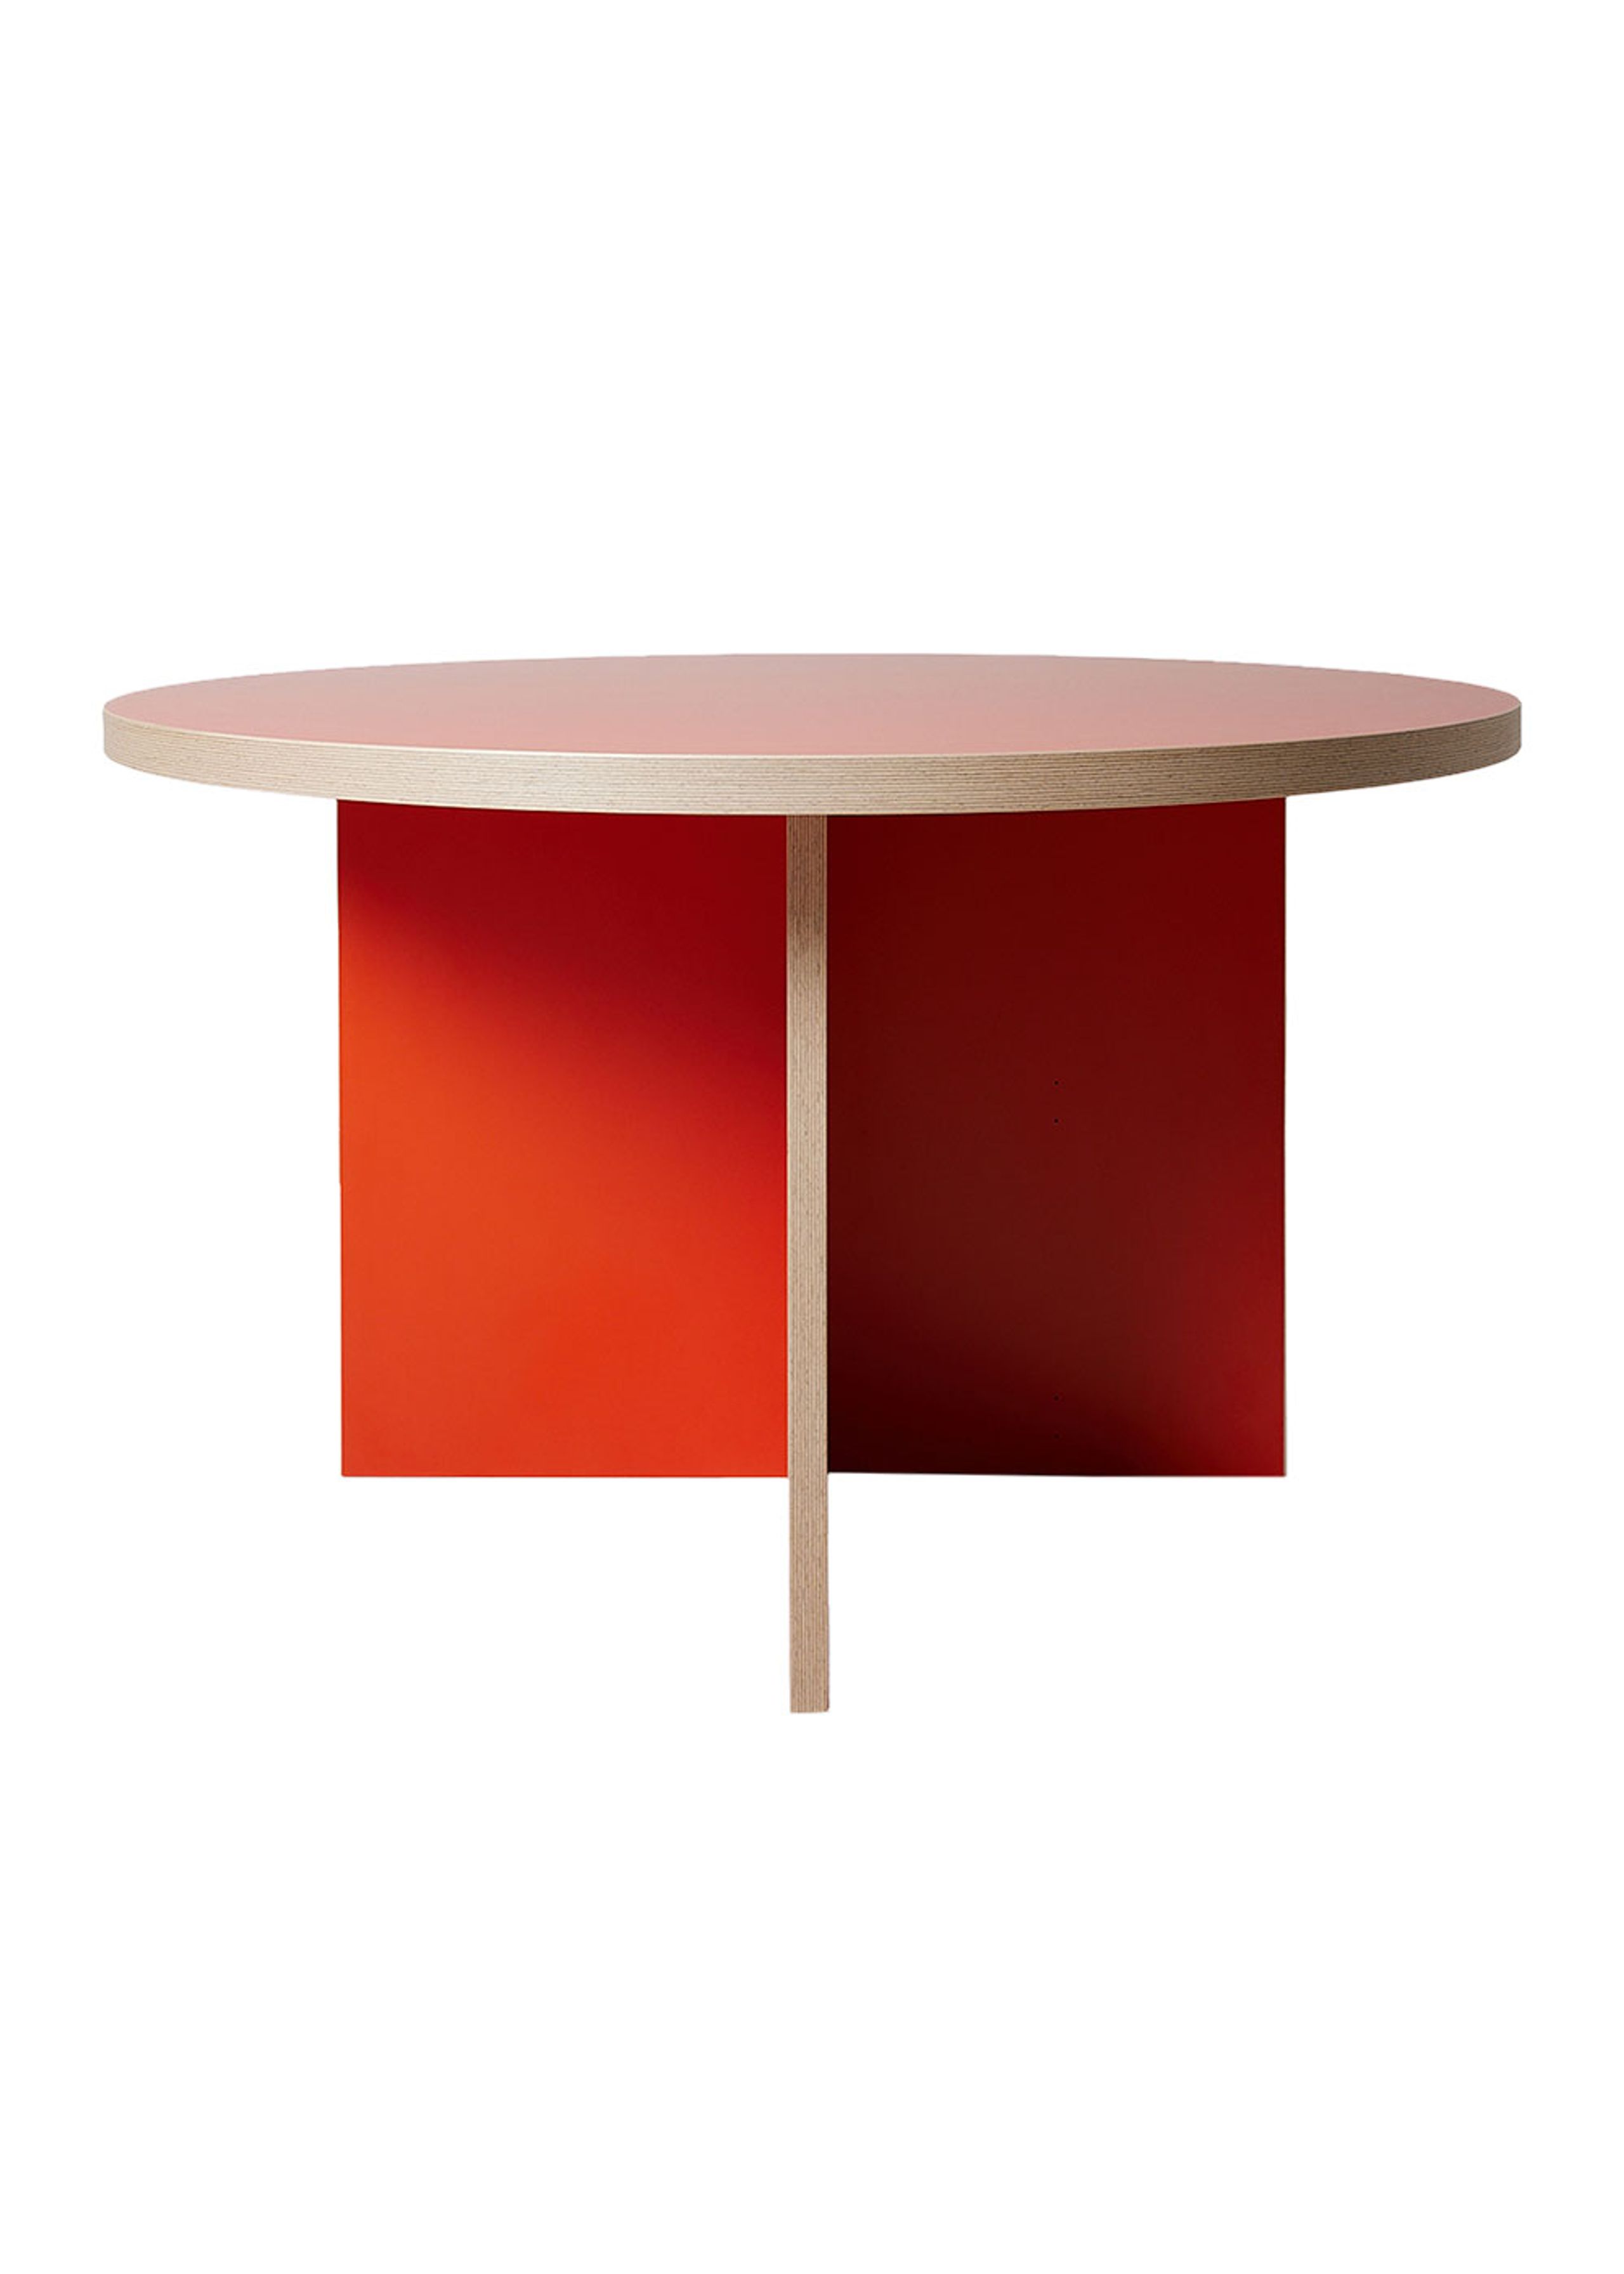 HKLiving - Esstisch - Dining Table, Round - 130 cm - Orange